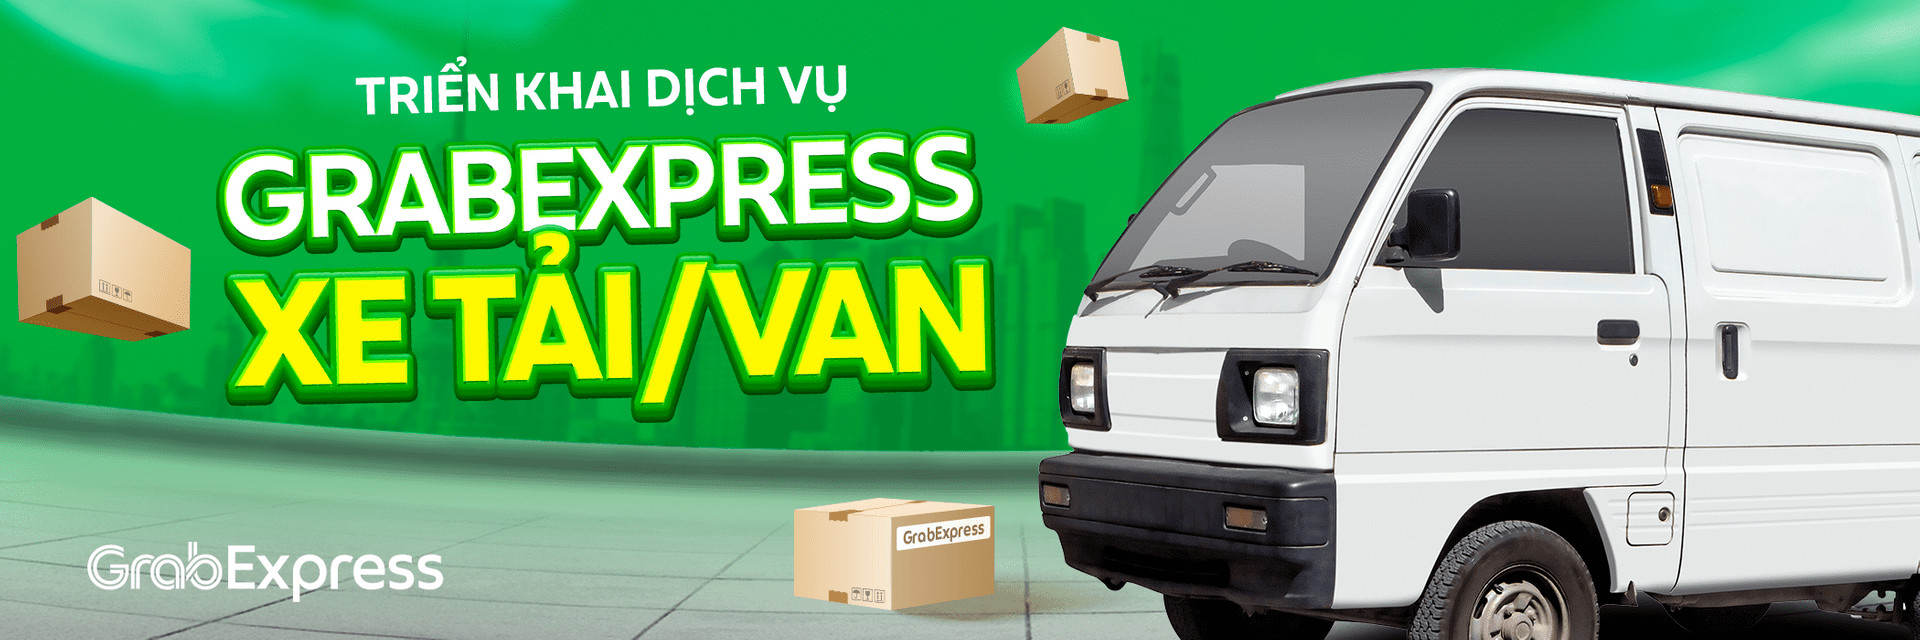 Suzuki Blind Van đồng hành cùng dịch vụ GrabExpress